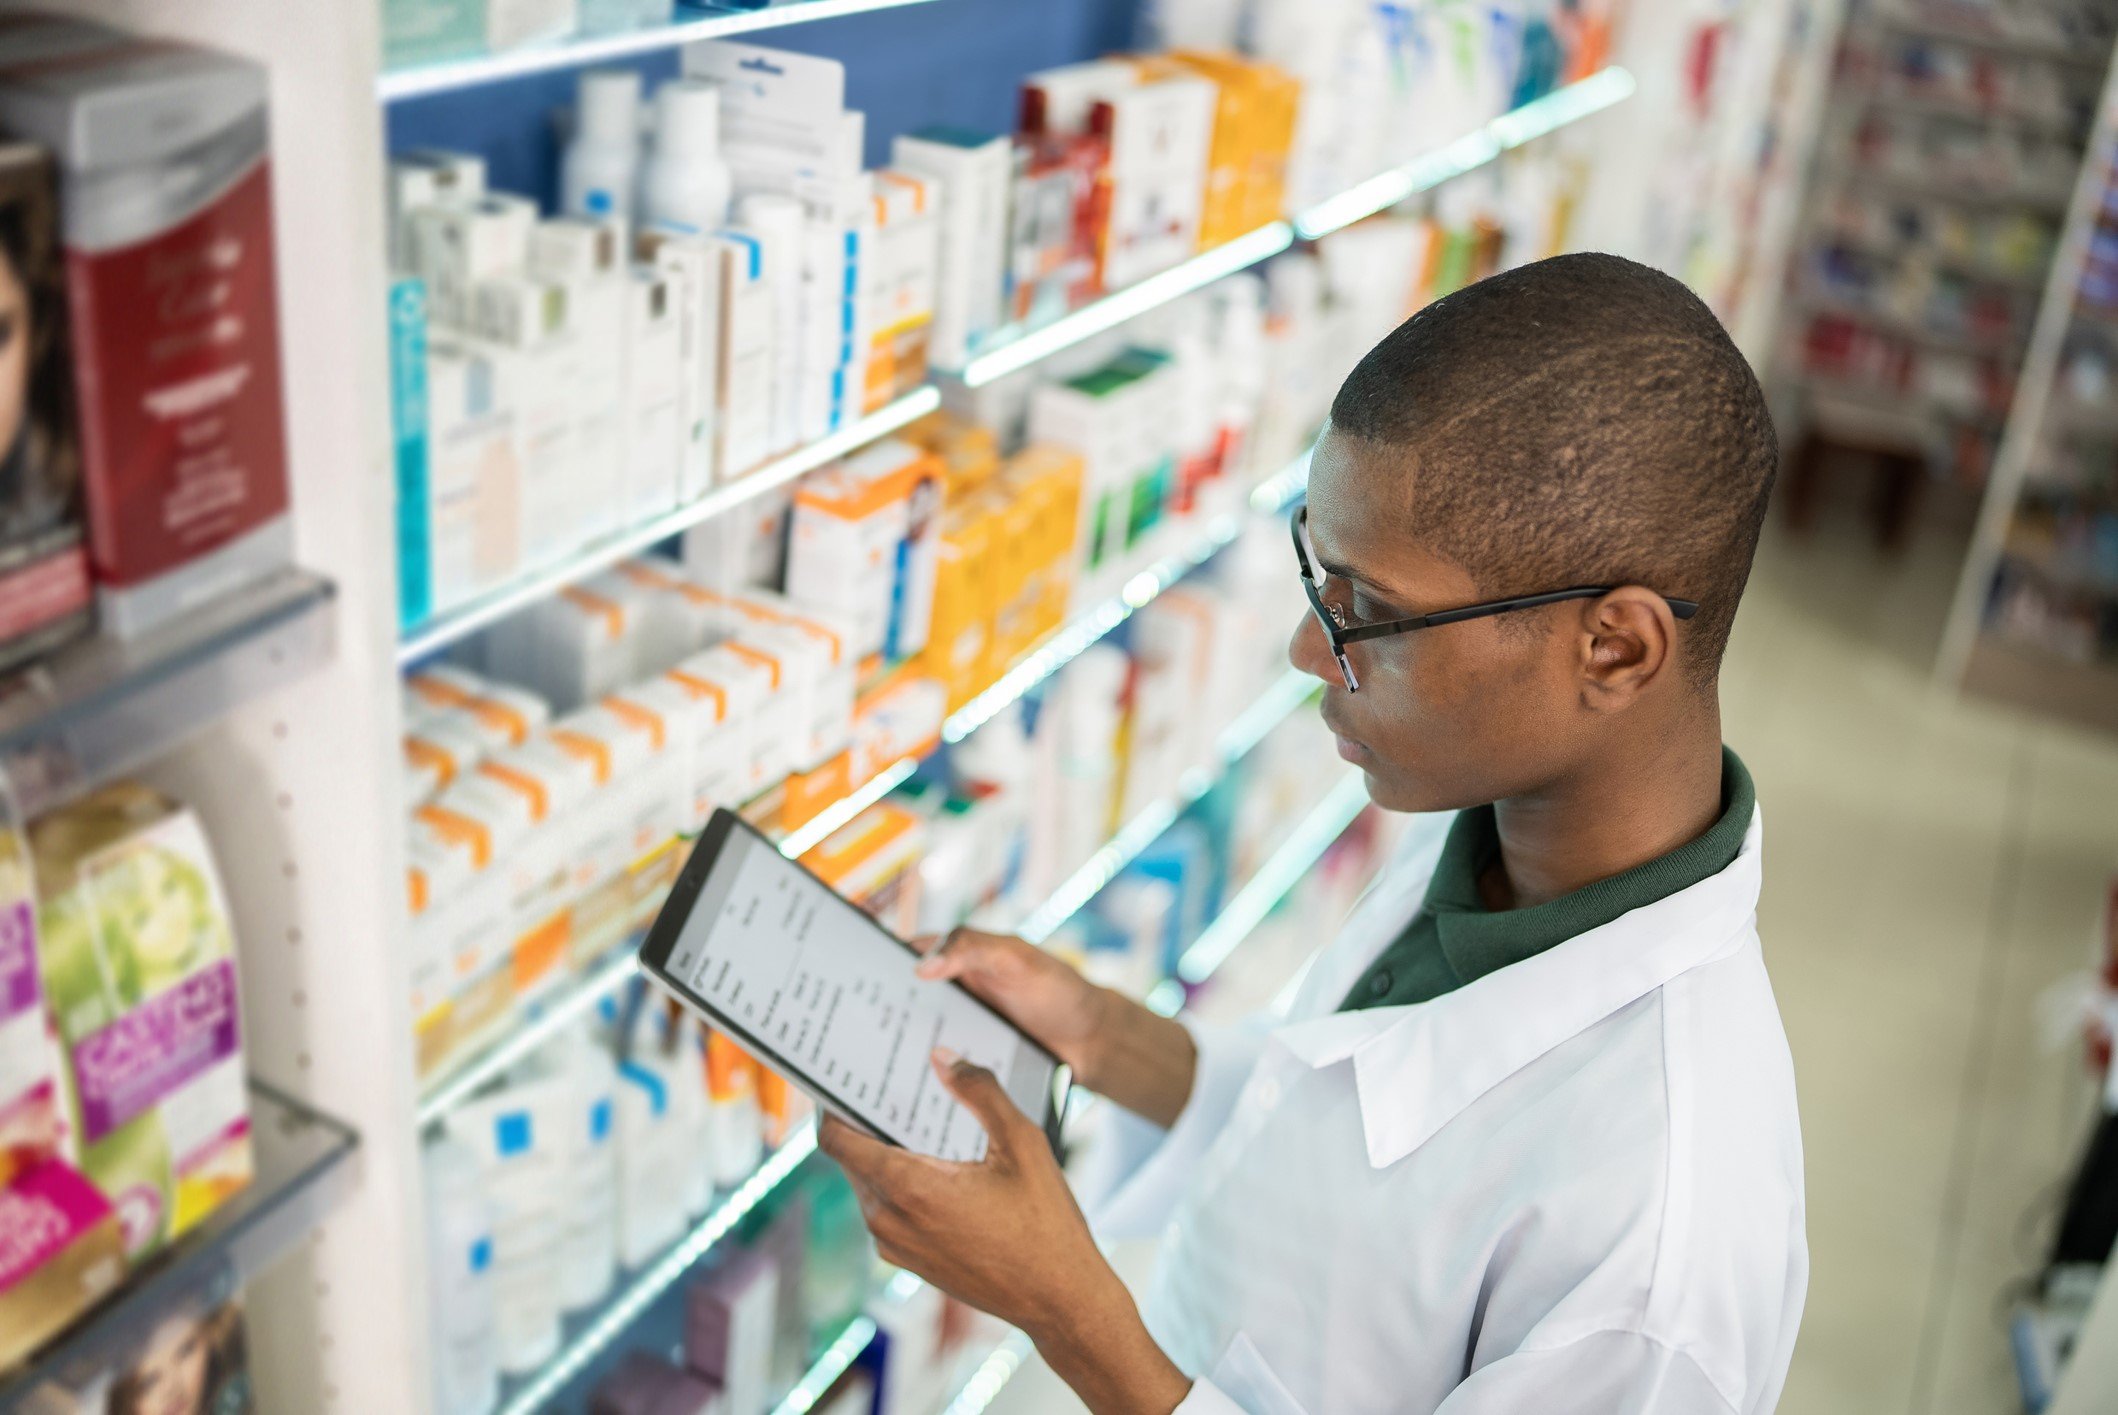 Pharmacist filling prescription in pharmacy - stock photo FG TradeGetty Images